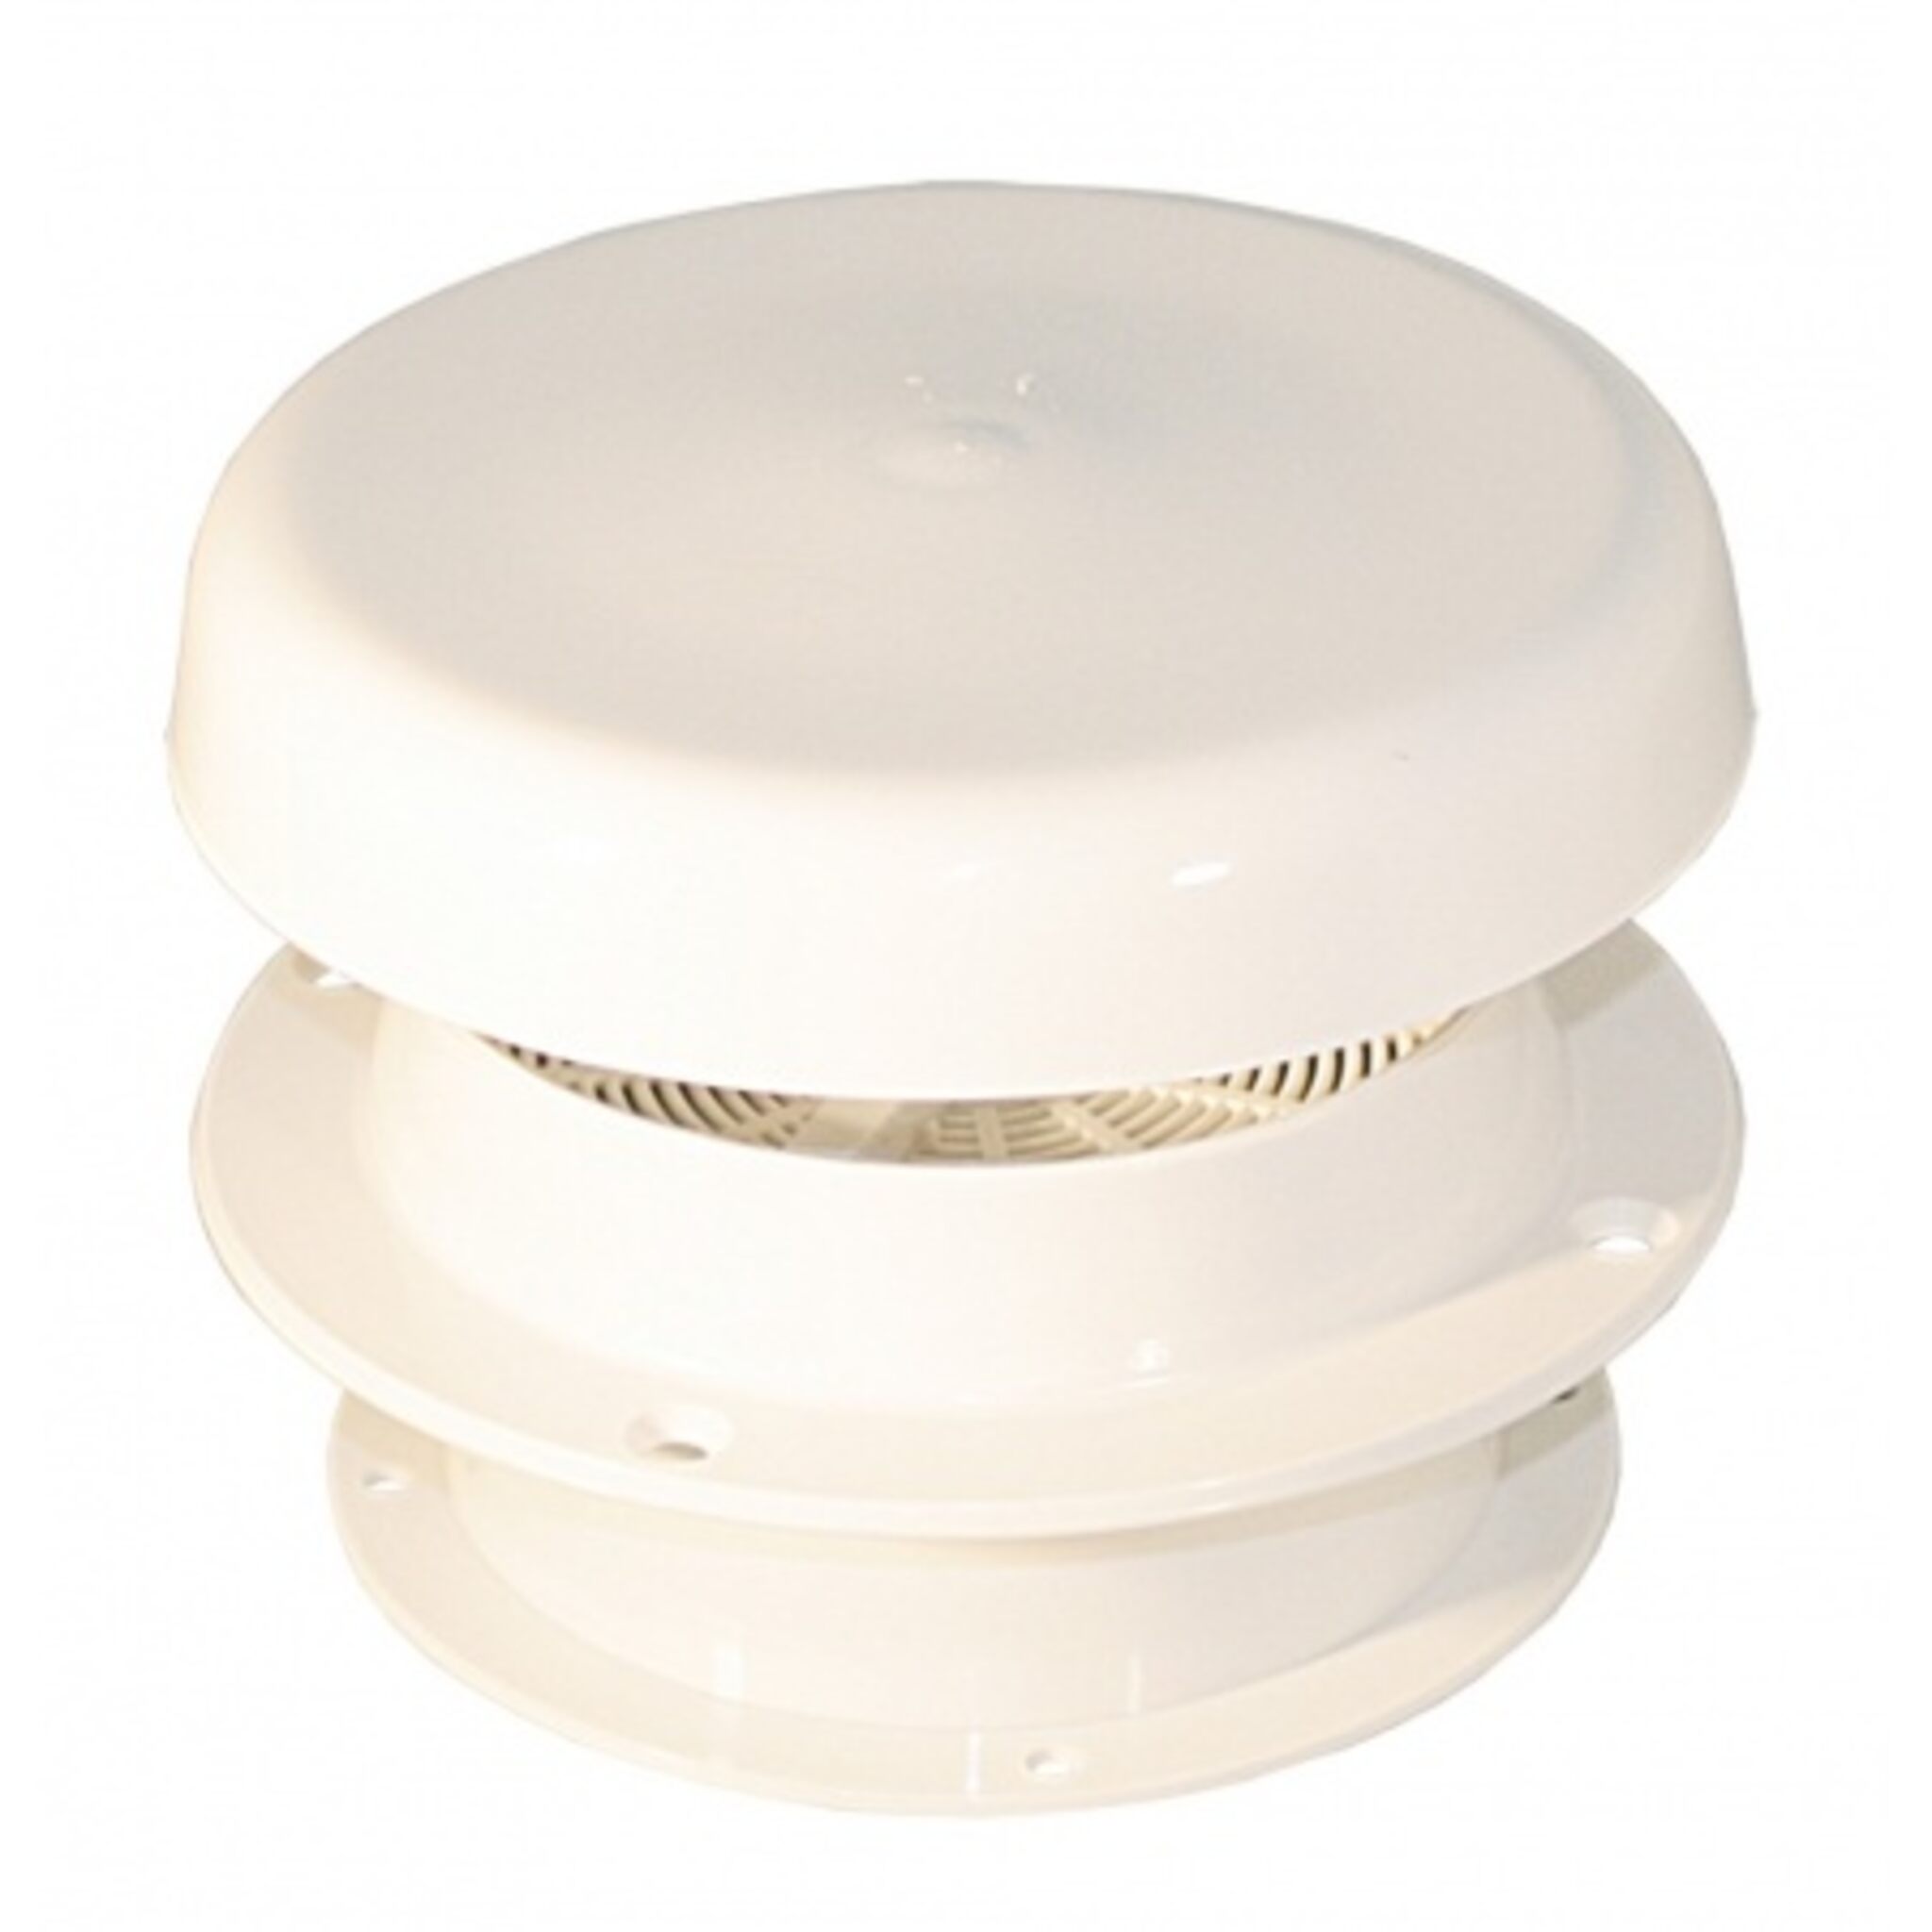 Mushroom ventilator | deck ventilator with white plastic cap